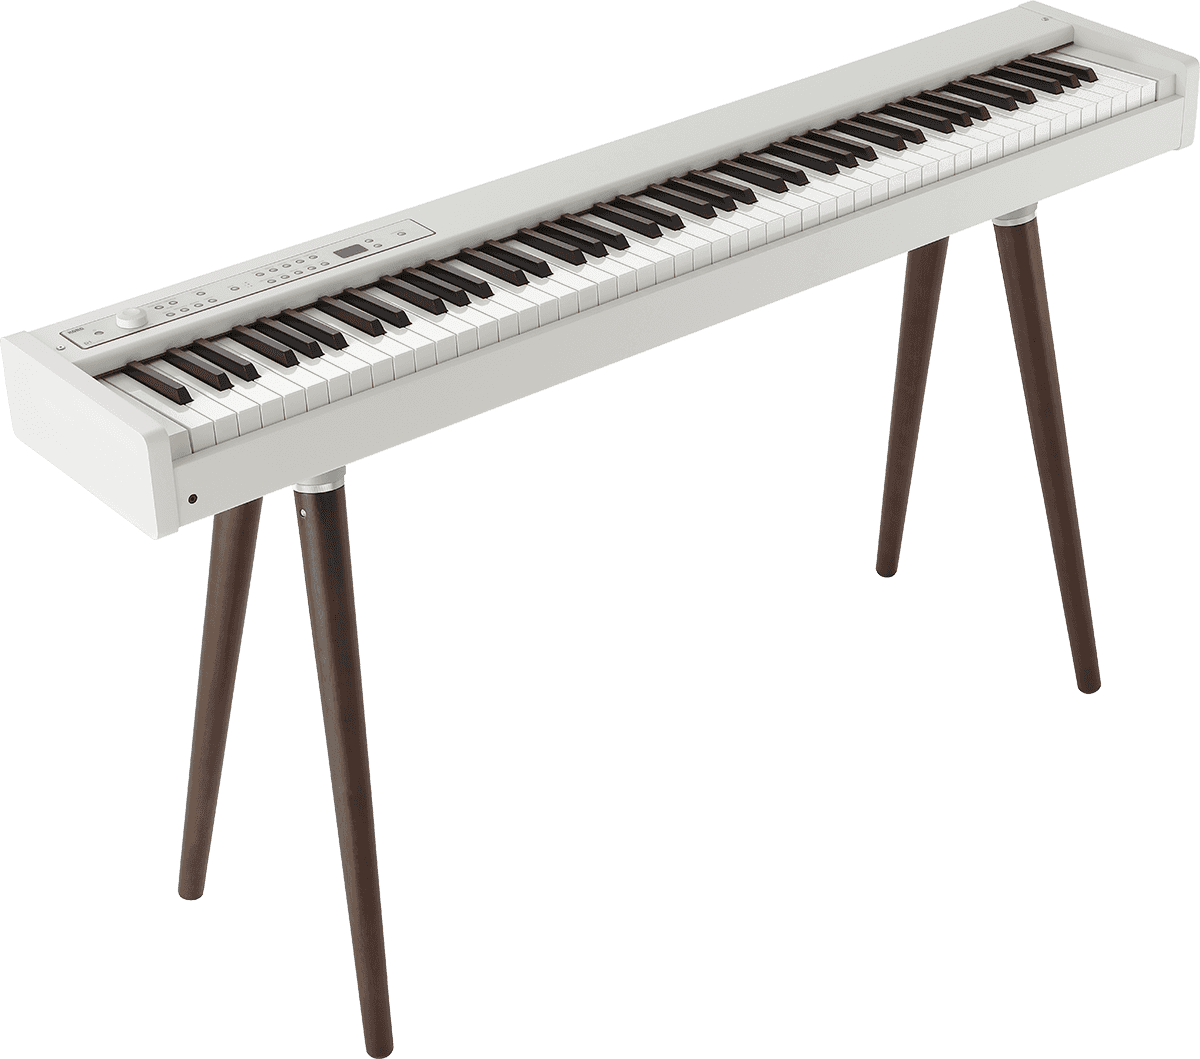 Korg Stand En Bois Pour D1, Sv2 Et Pa5x - Keyboard Stand - Variation 3